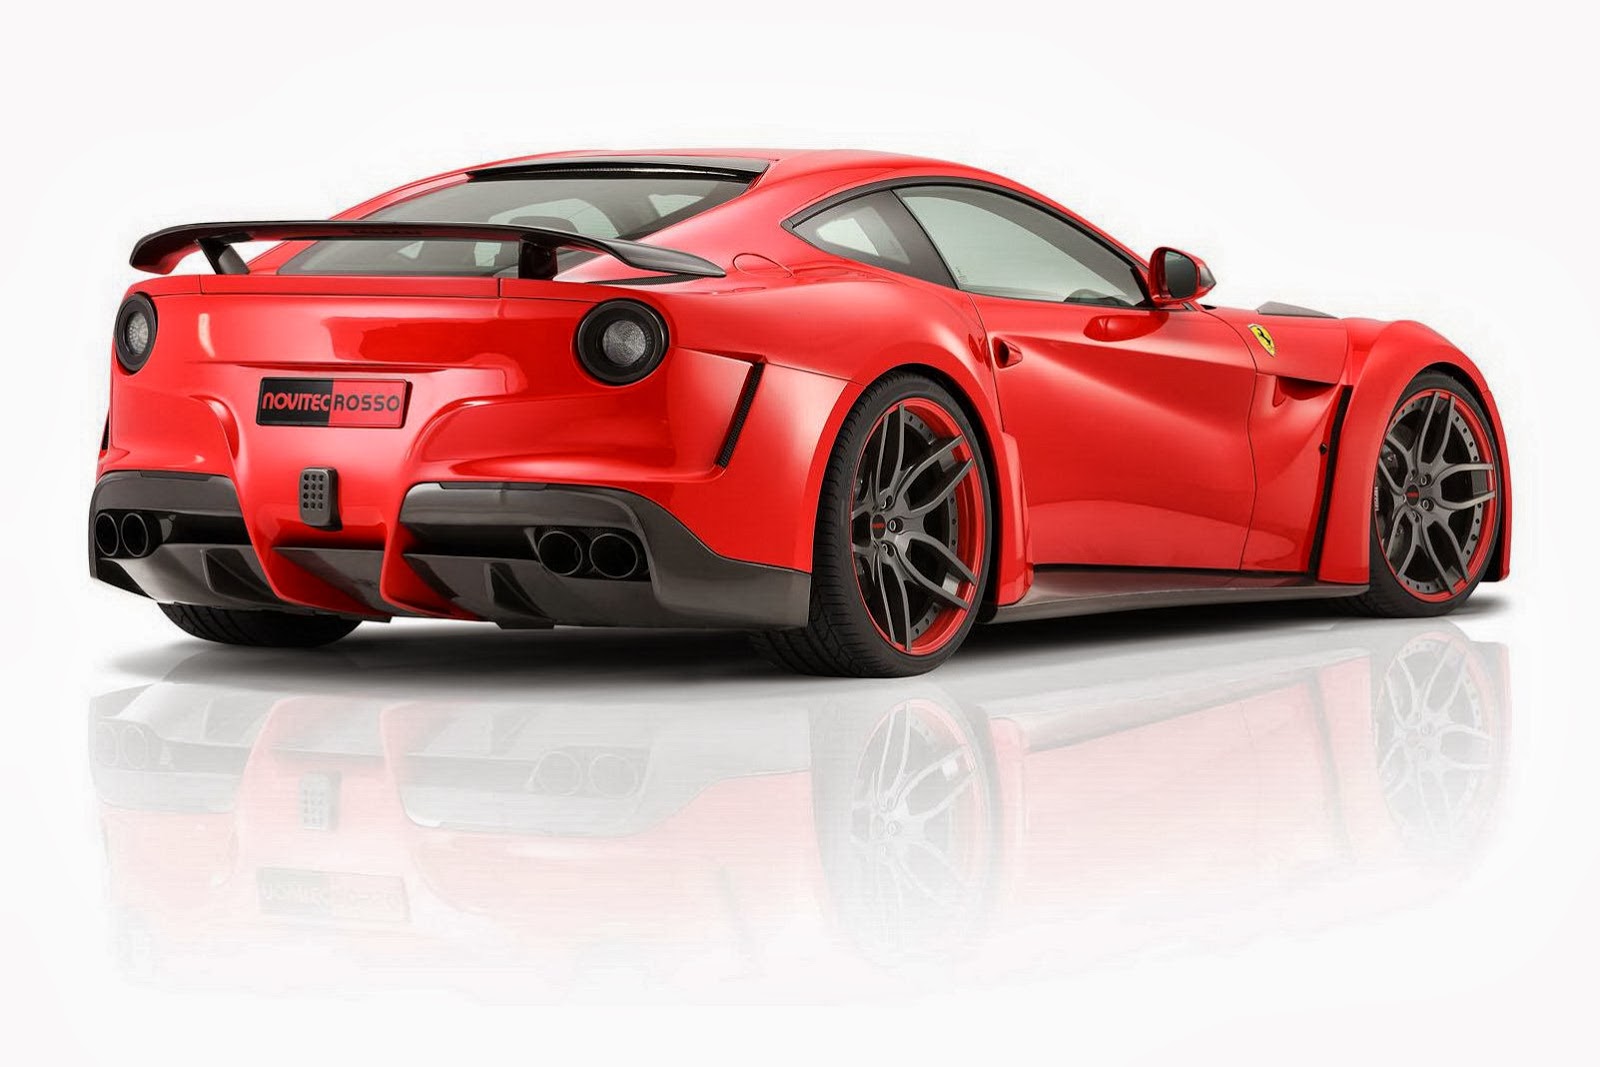 Amazing Ferrari Novitec Rosso Pictures & Backgrounds